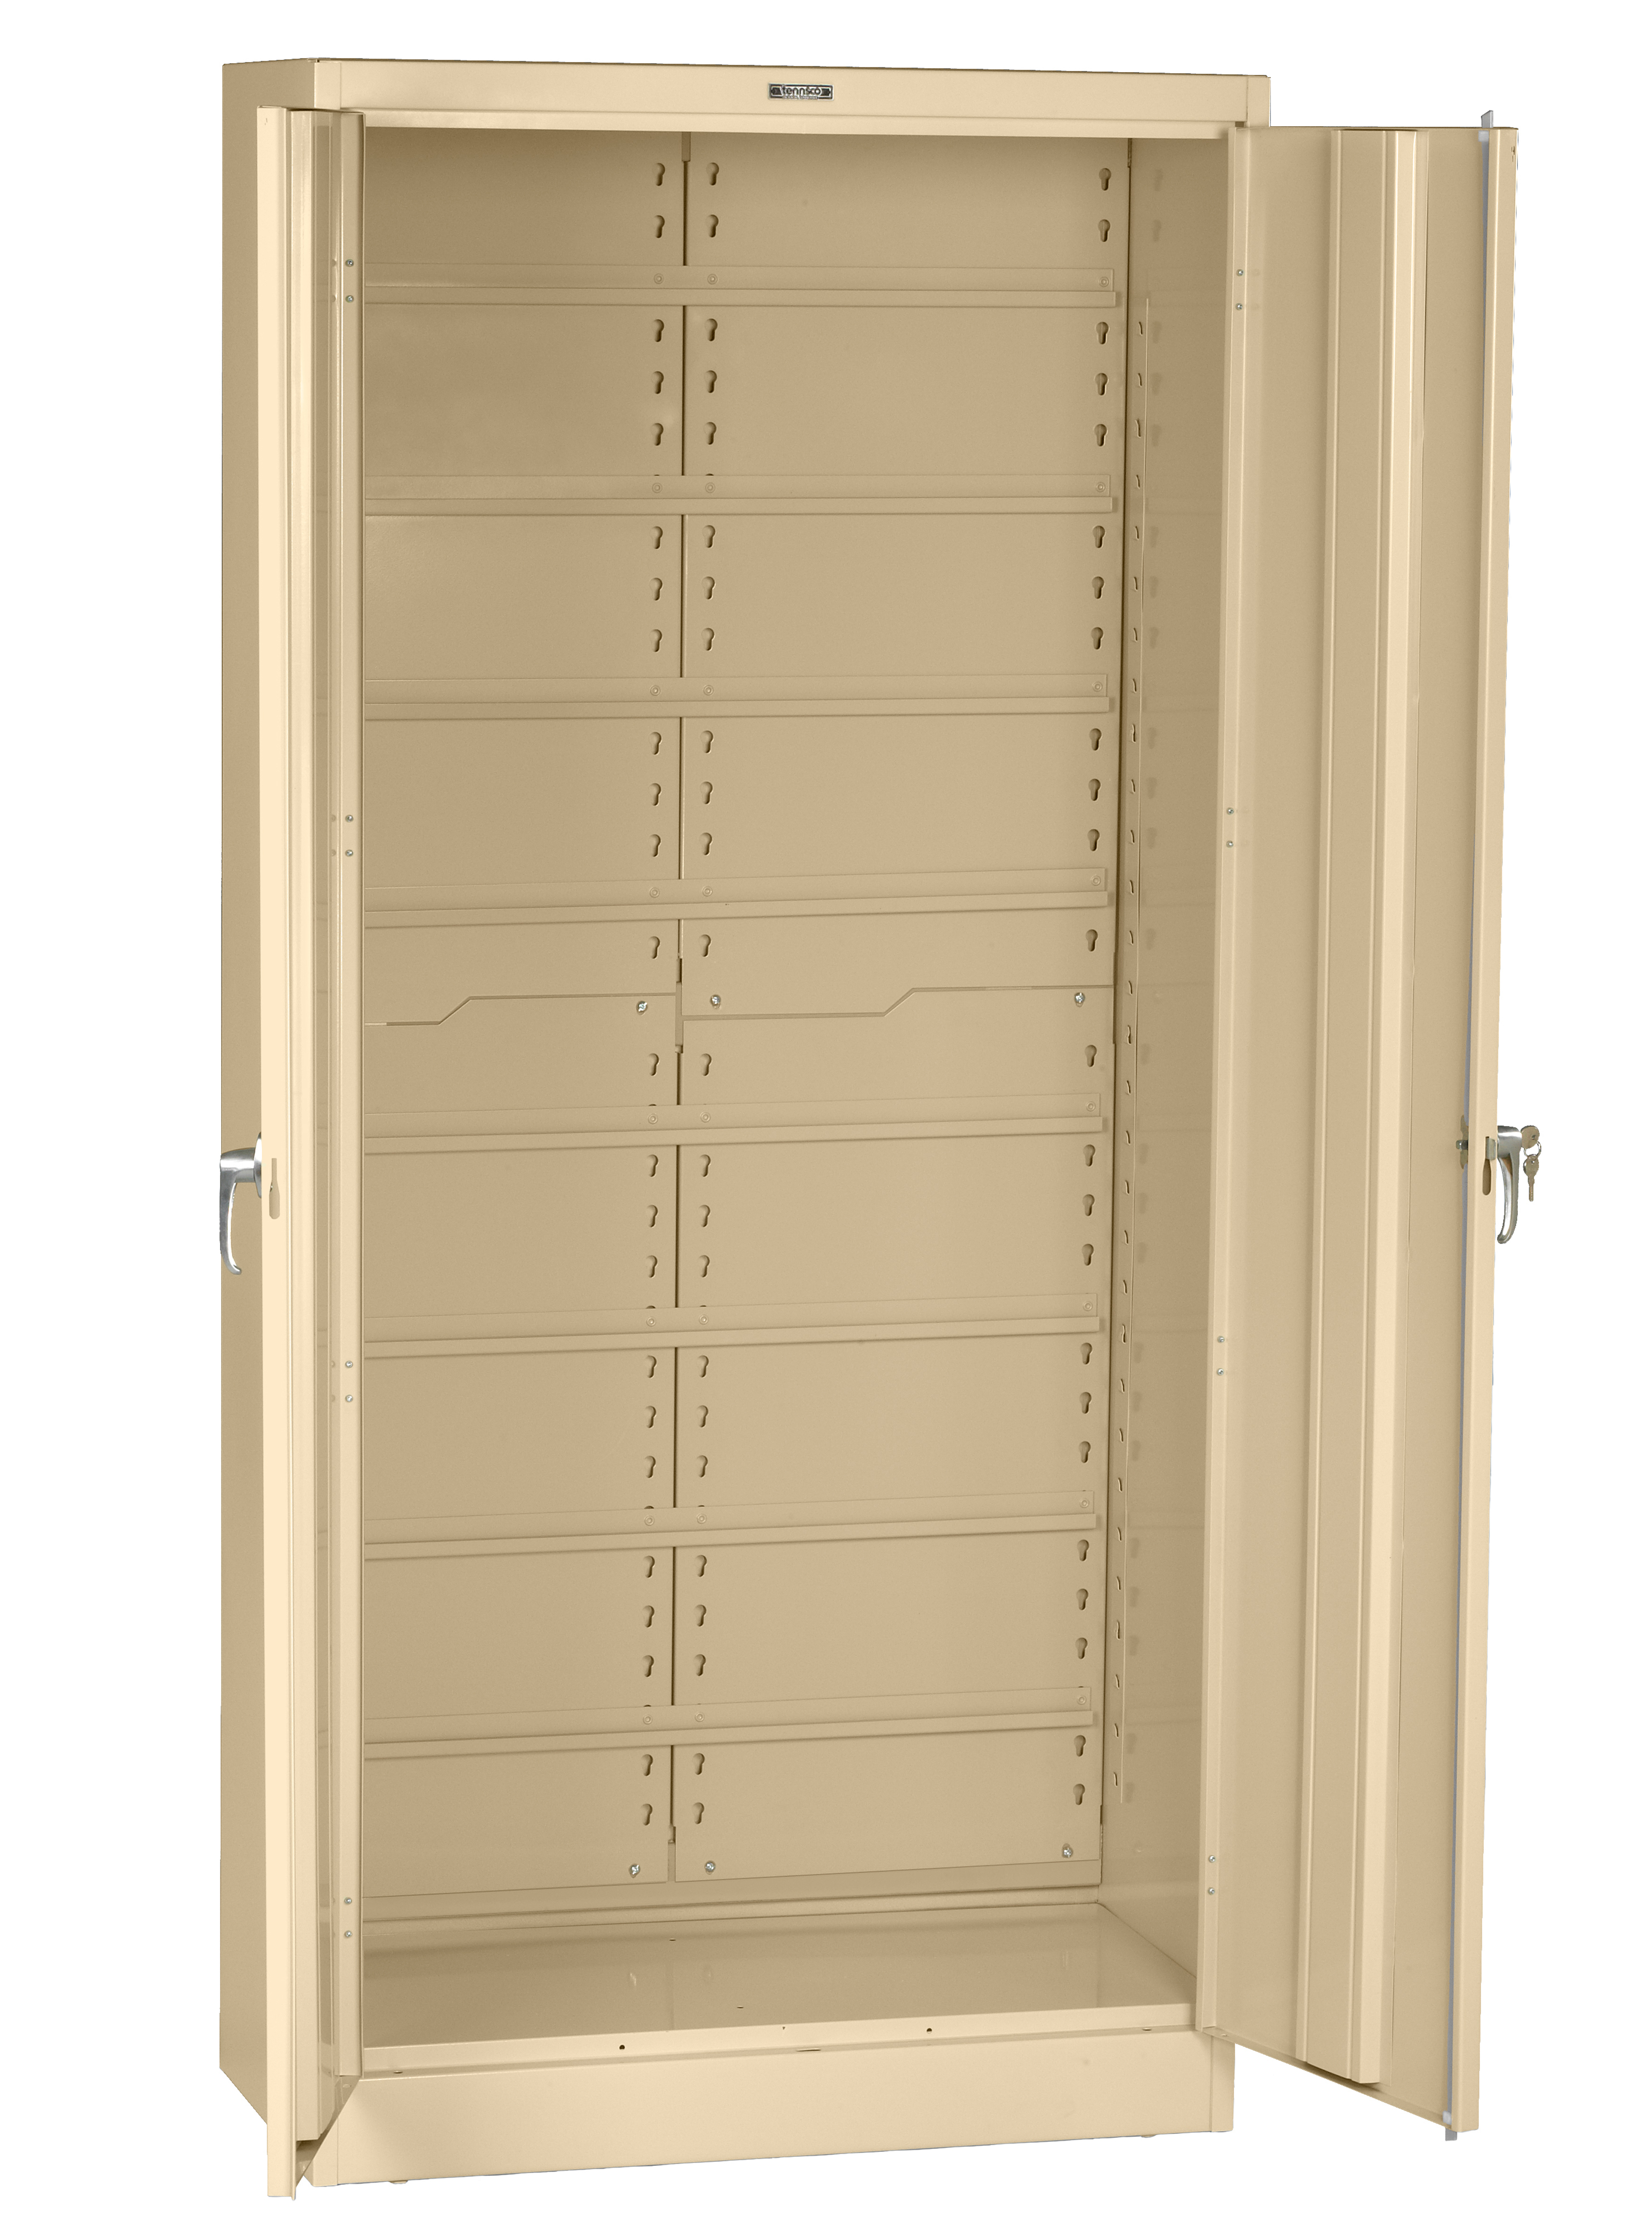 7824BC Deluxe Bin Box Cabinet